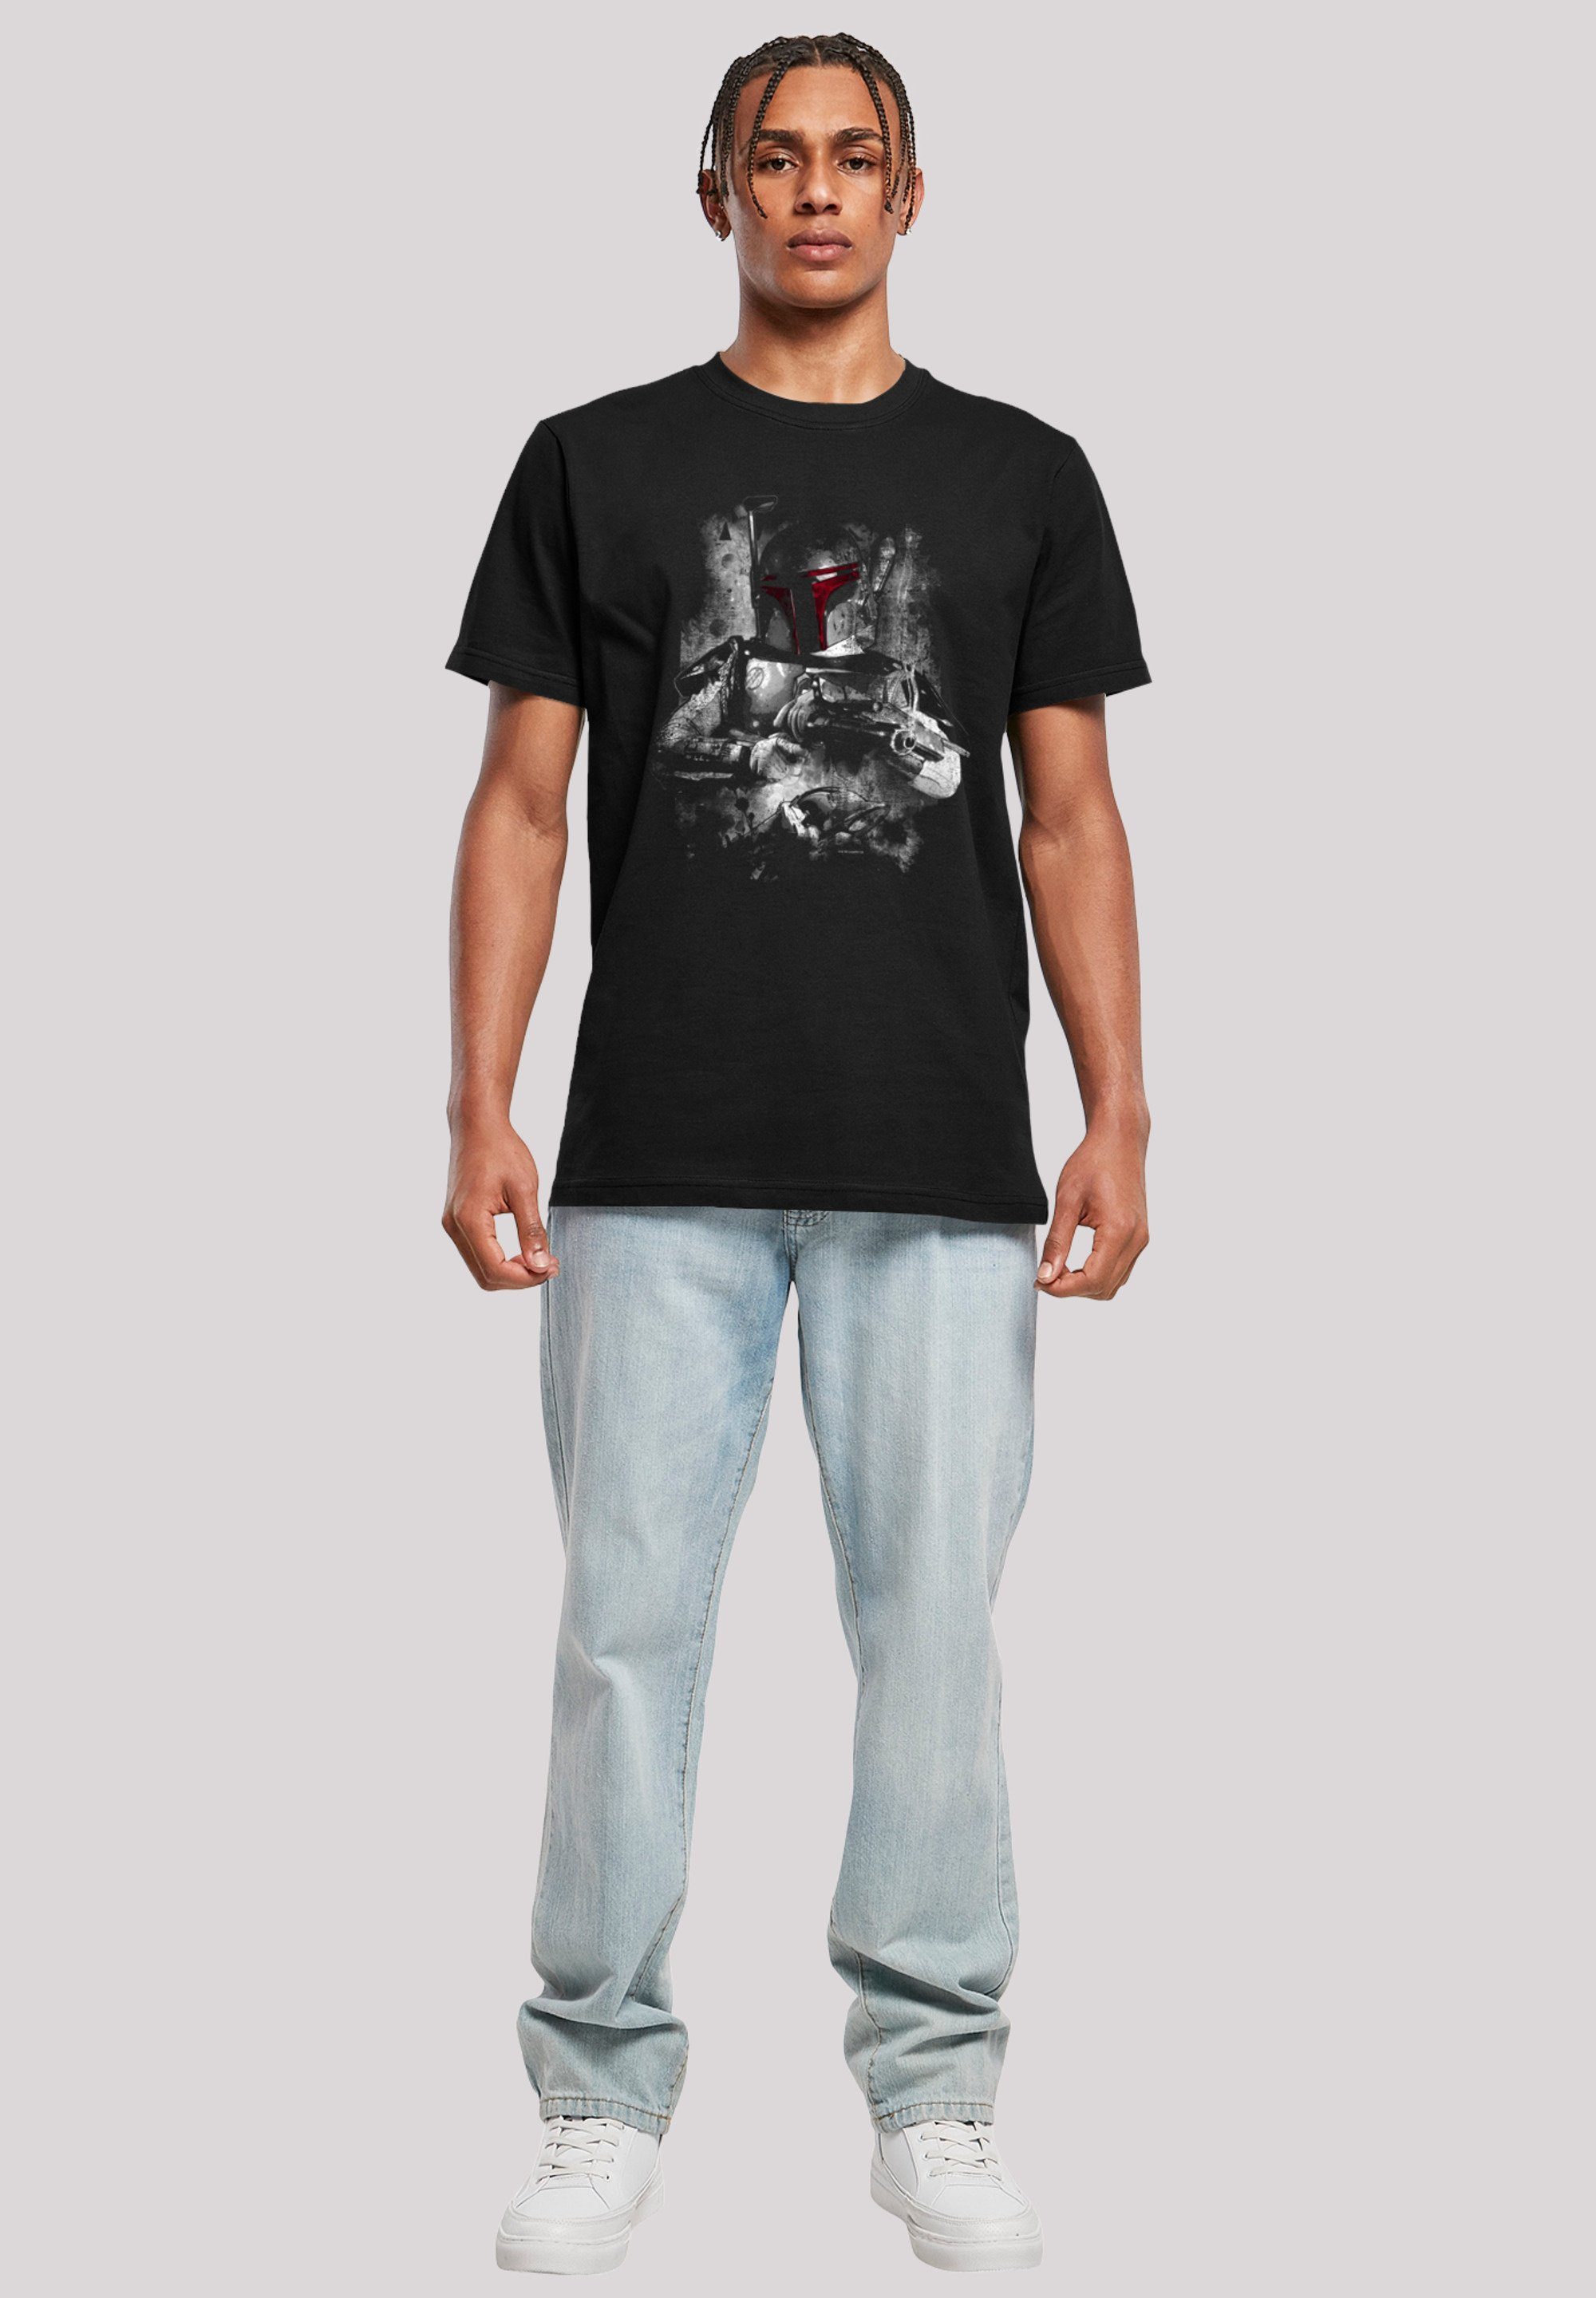 F4NT4STIC T-Shirt Star Print Distressed Boba Wars Fett